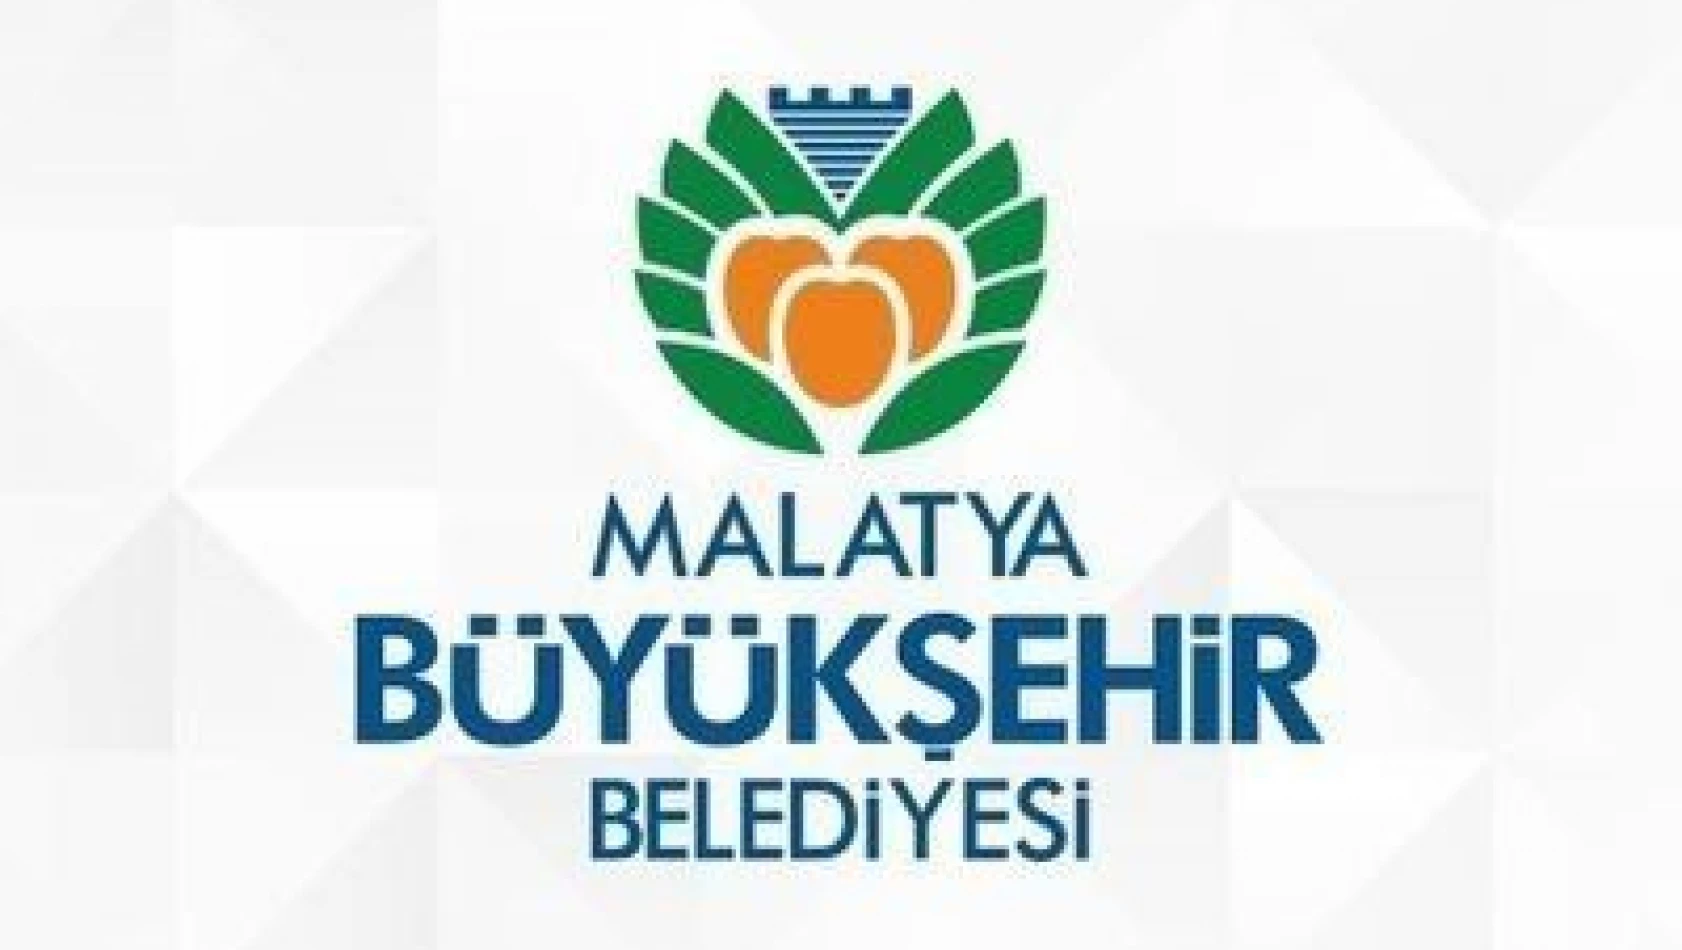 Malatya Büyükşehir Belediyesi'nden kiralık dükkanlar